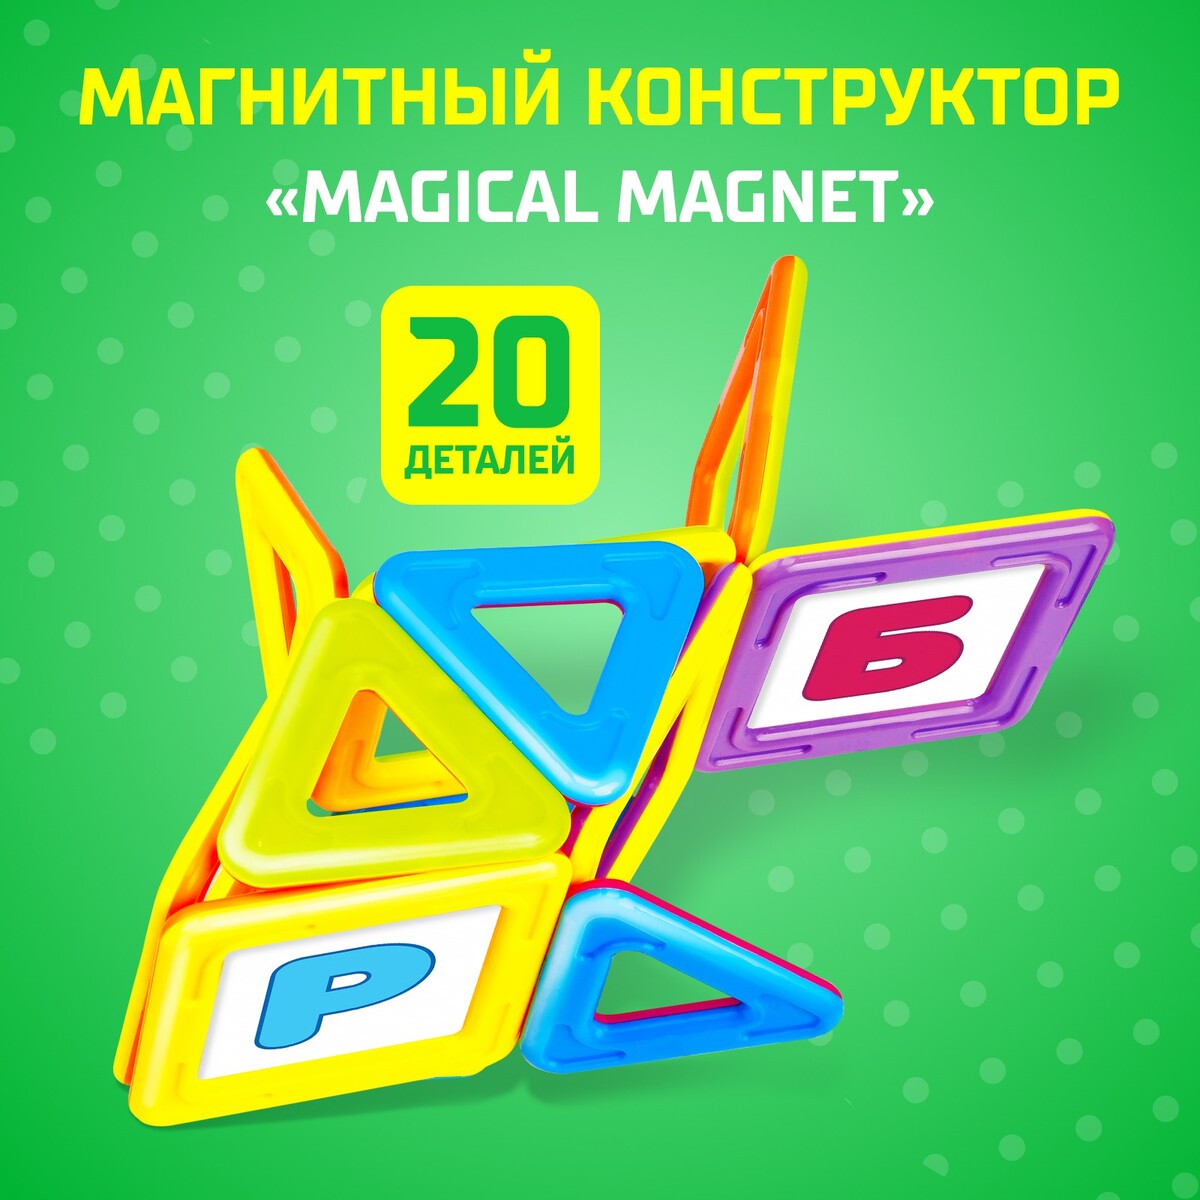 Магнитный конструктор magical magnet, 20 деталей, детали матовые конструктор магнитный замок 204 детали sima land